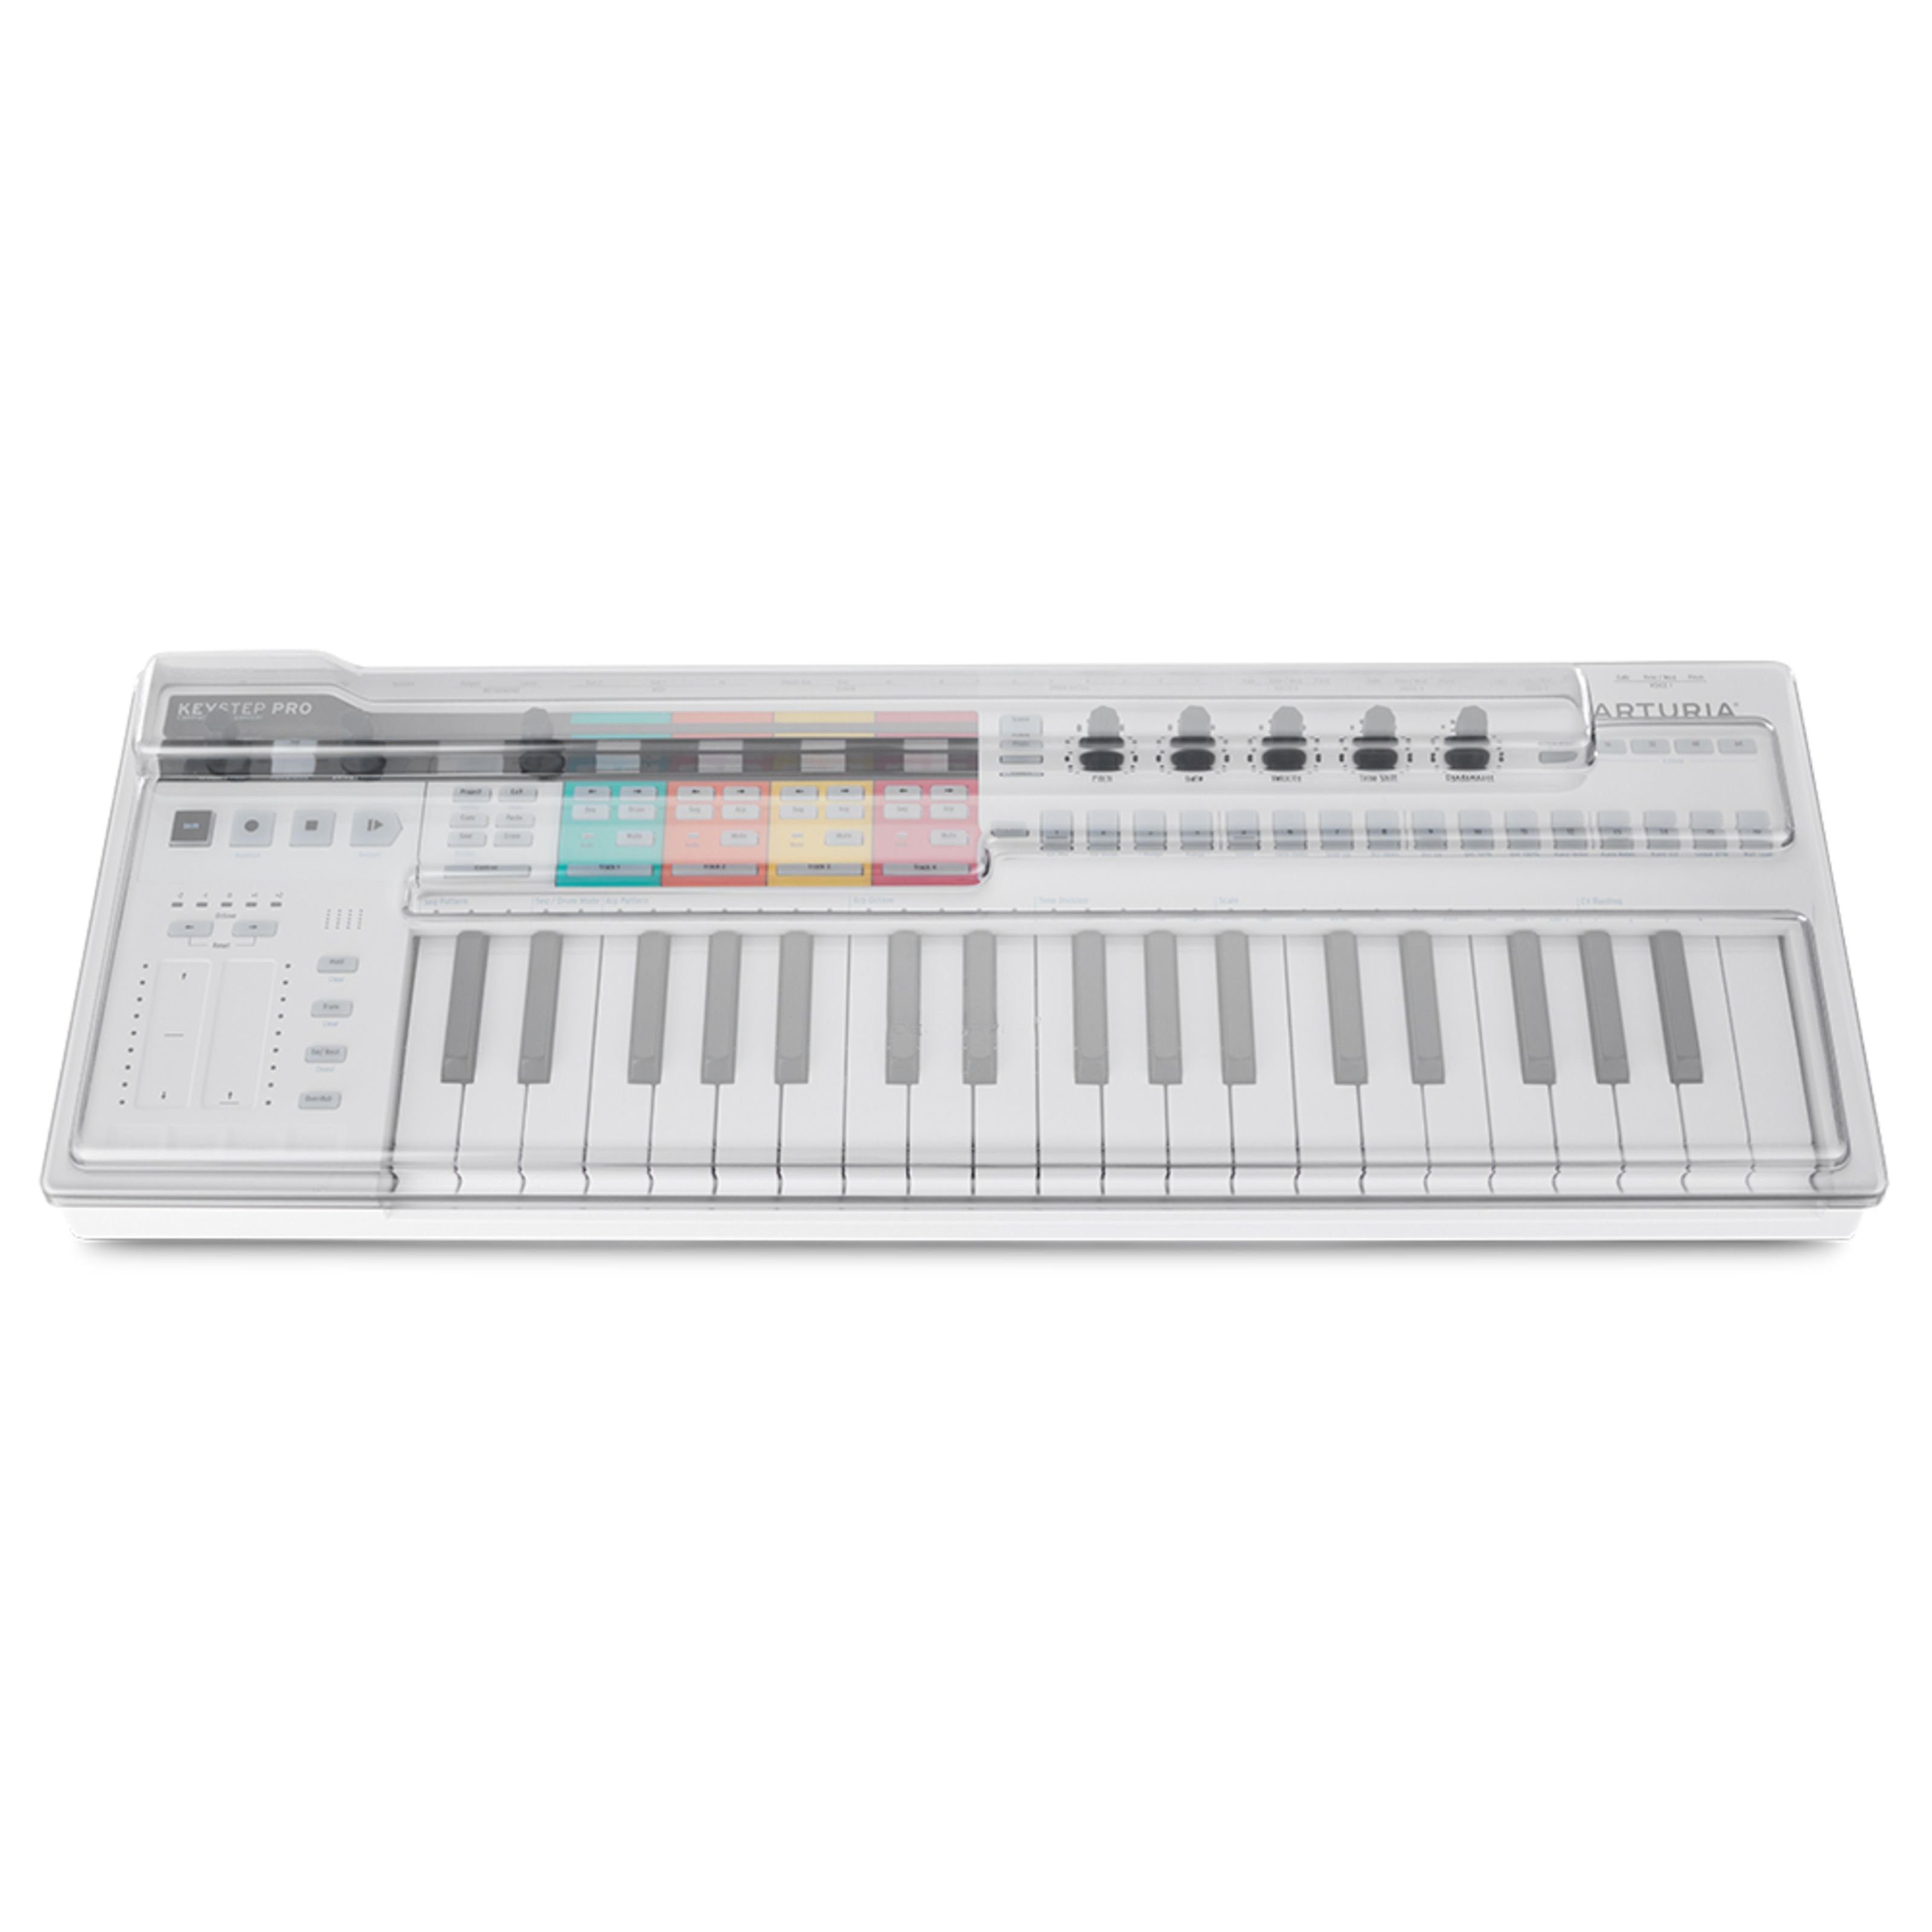 Keystep Cover Pro Decksaver Arturia für Keyboards - Abdeckung Spielzeug-Musikinstrument,